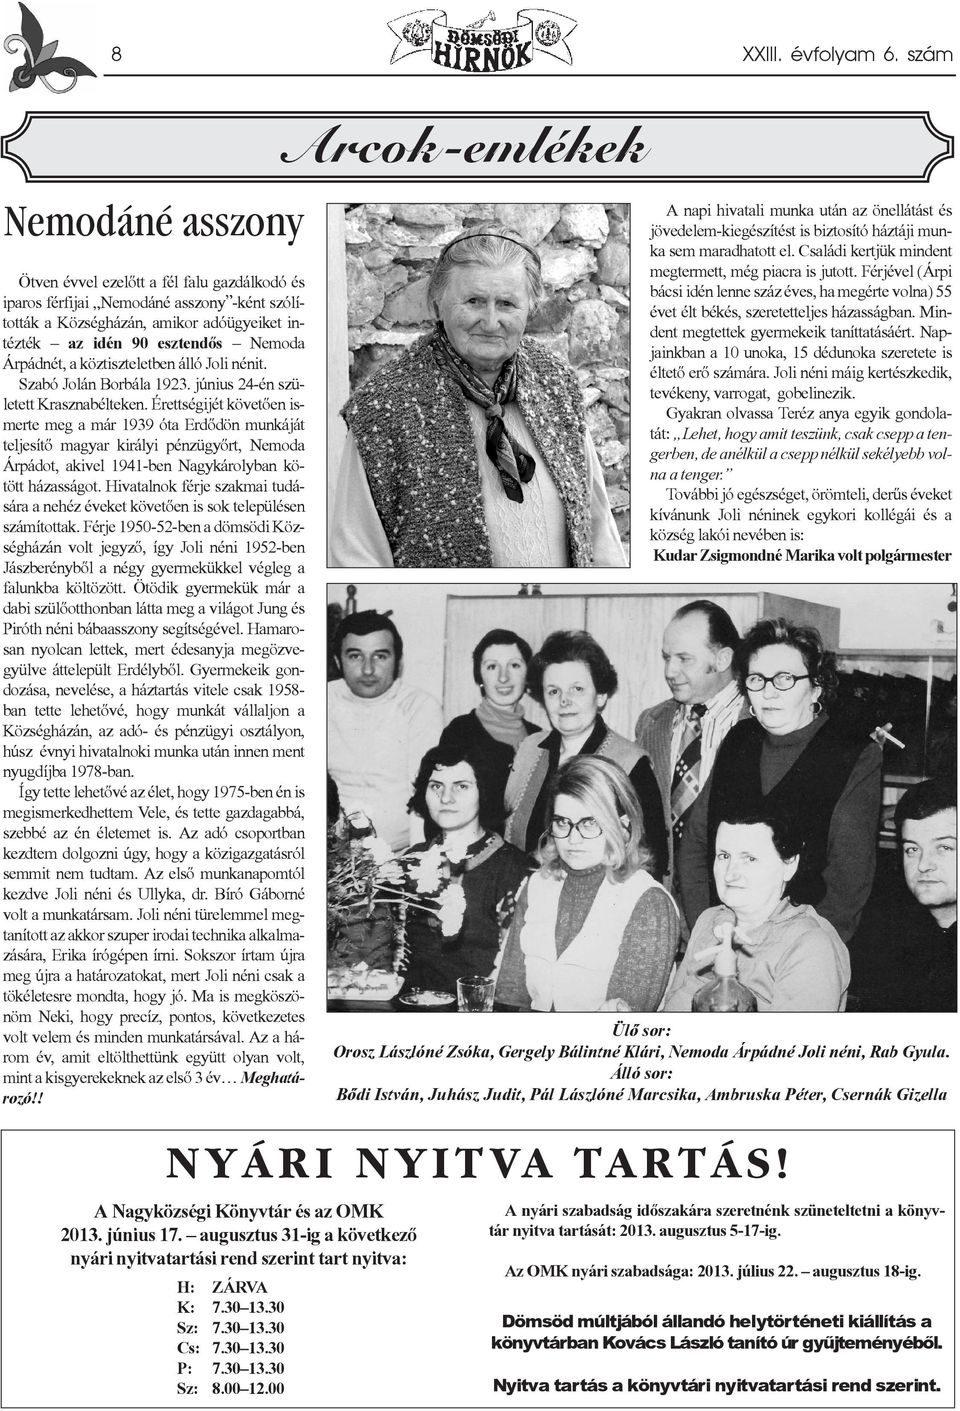 Nemoda Árpádnét, a köztiszteletben álló Joli nénit. Szabó Jolán Borbála 1923. június 24-én született Krasznabélteken.